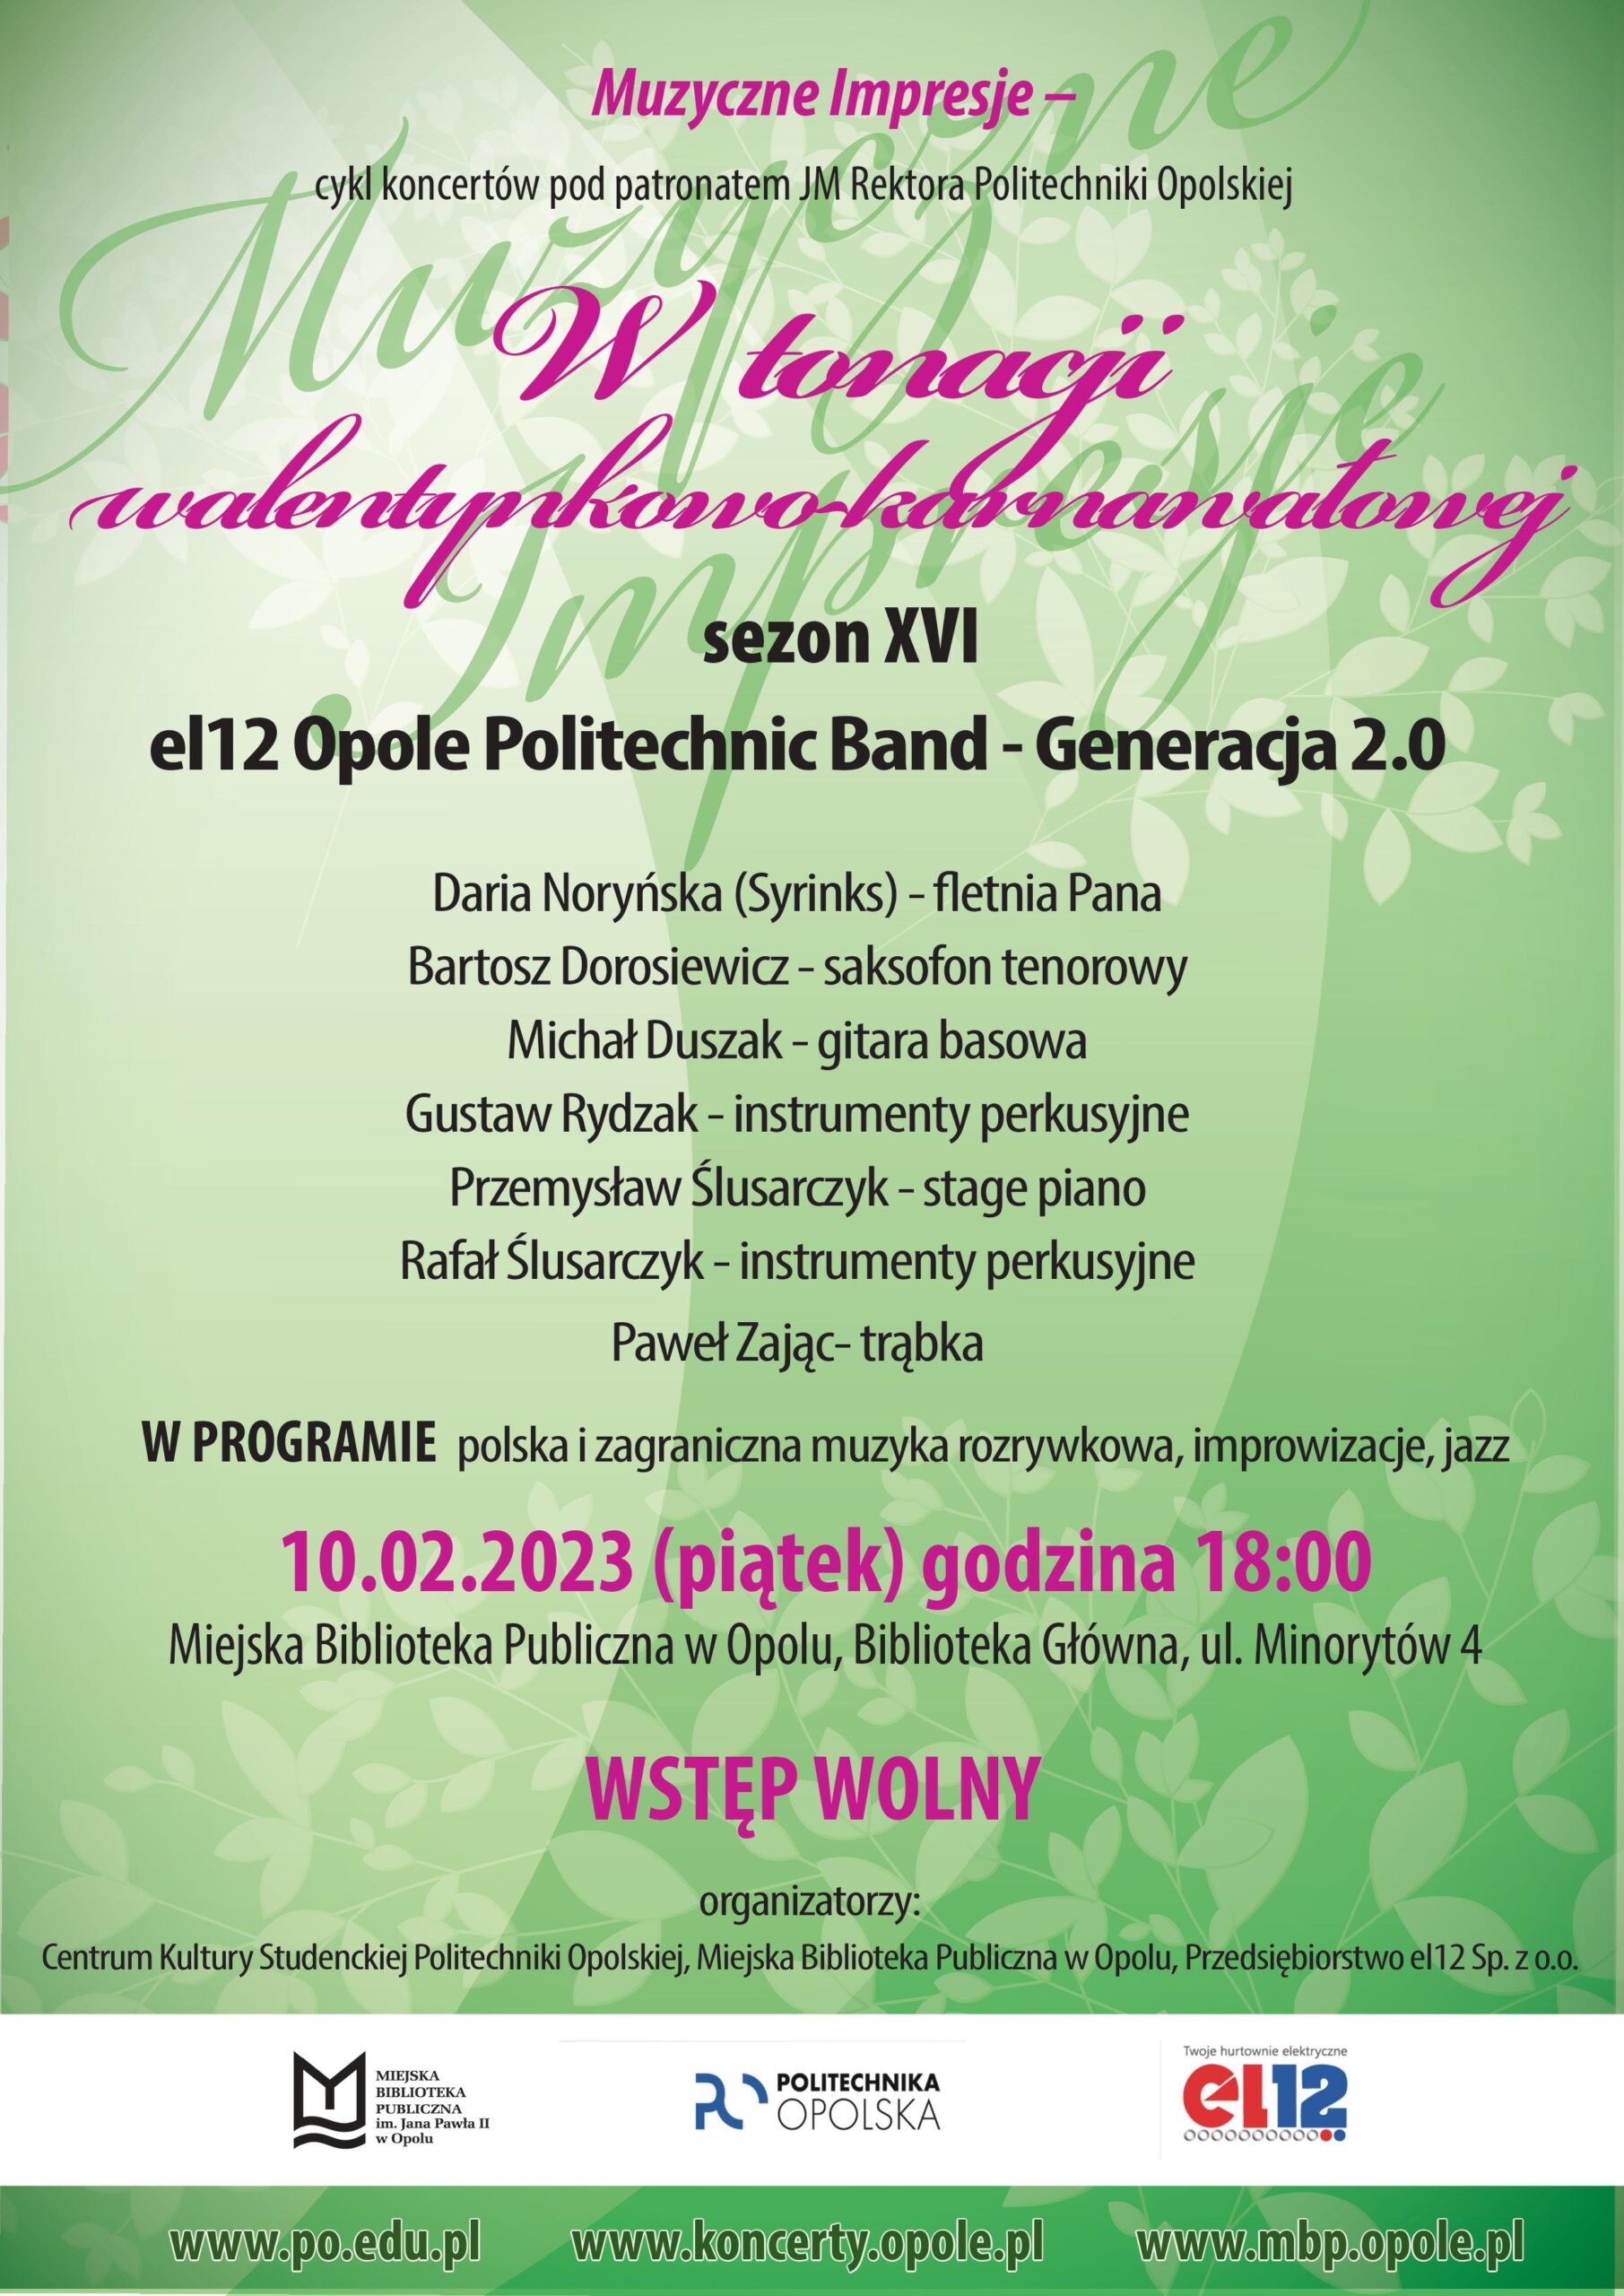 W tonacji walentynkowo-karnawałowej – koncert el12 Opole Politechnic Band - Generacja 2.0